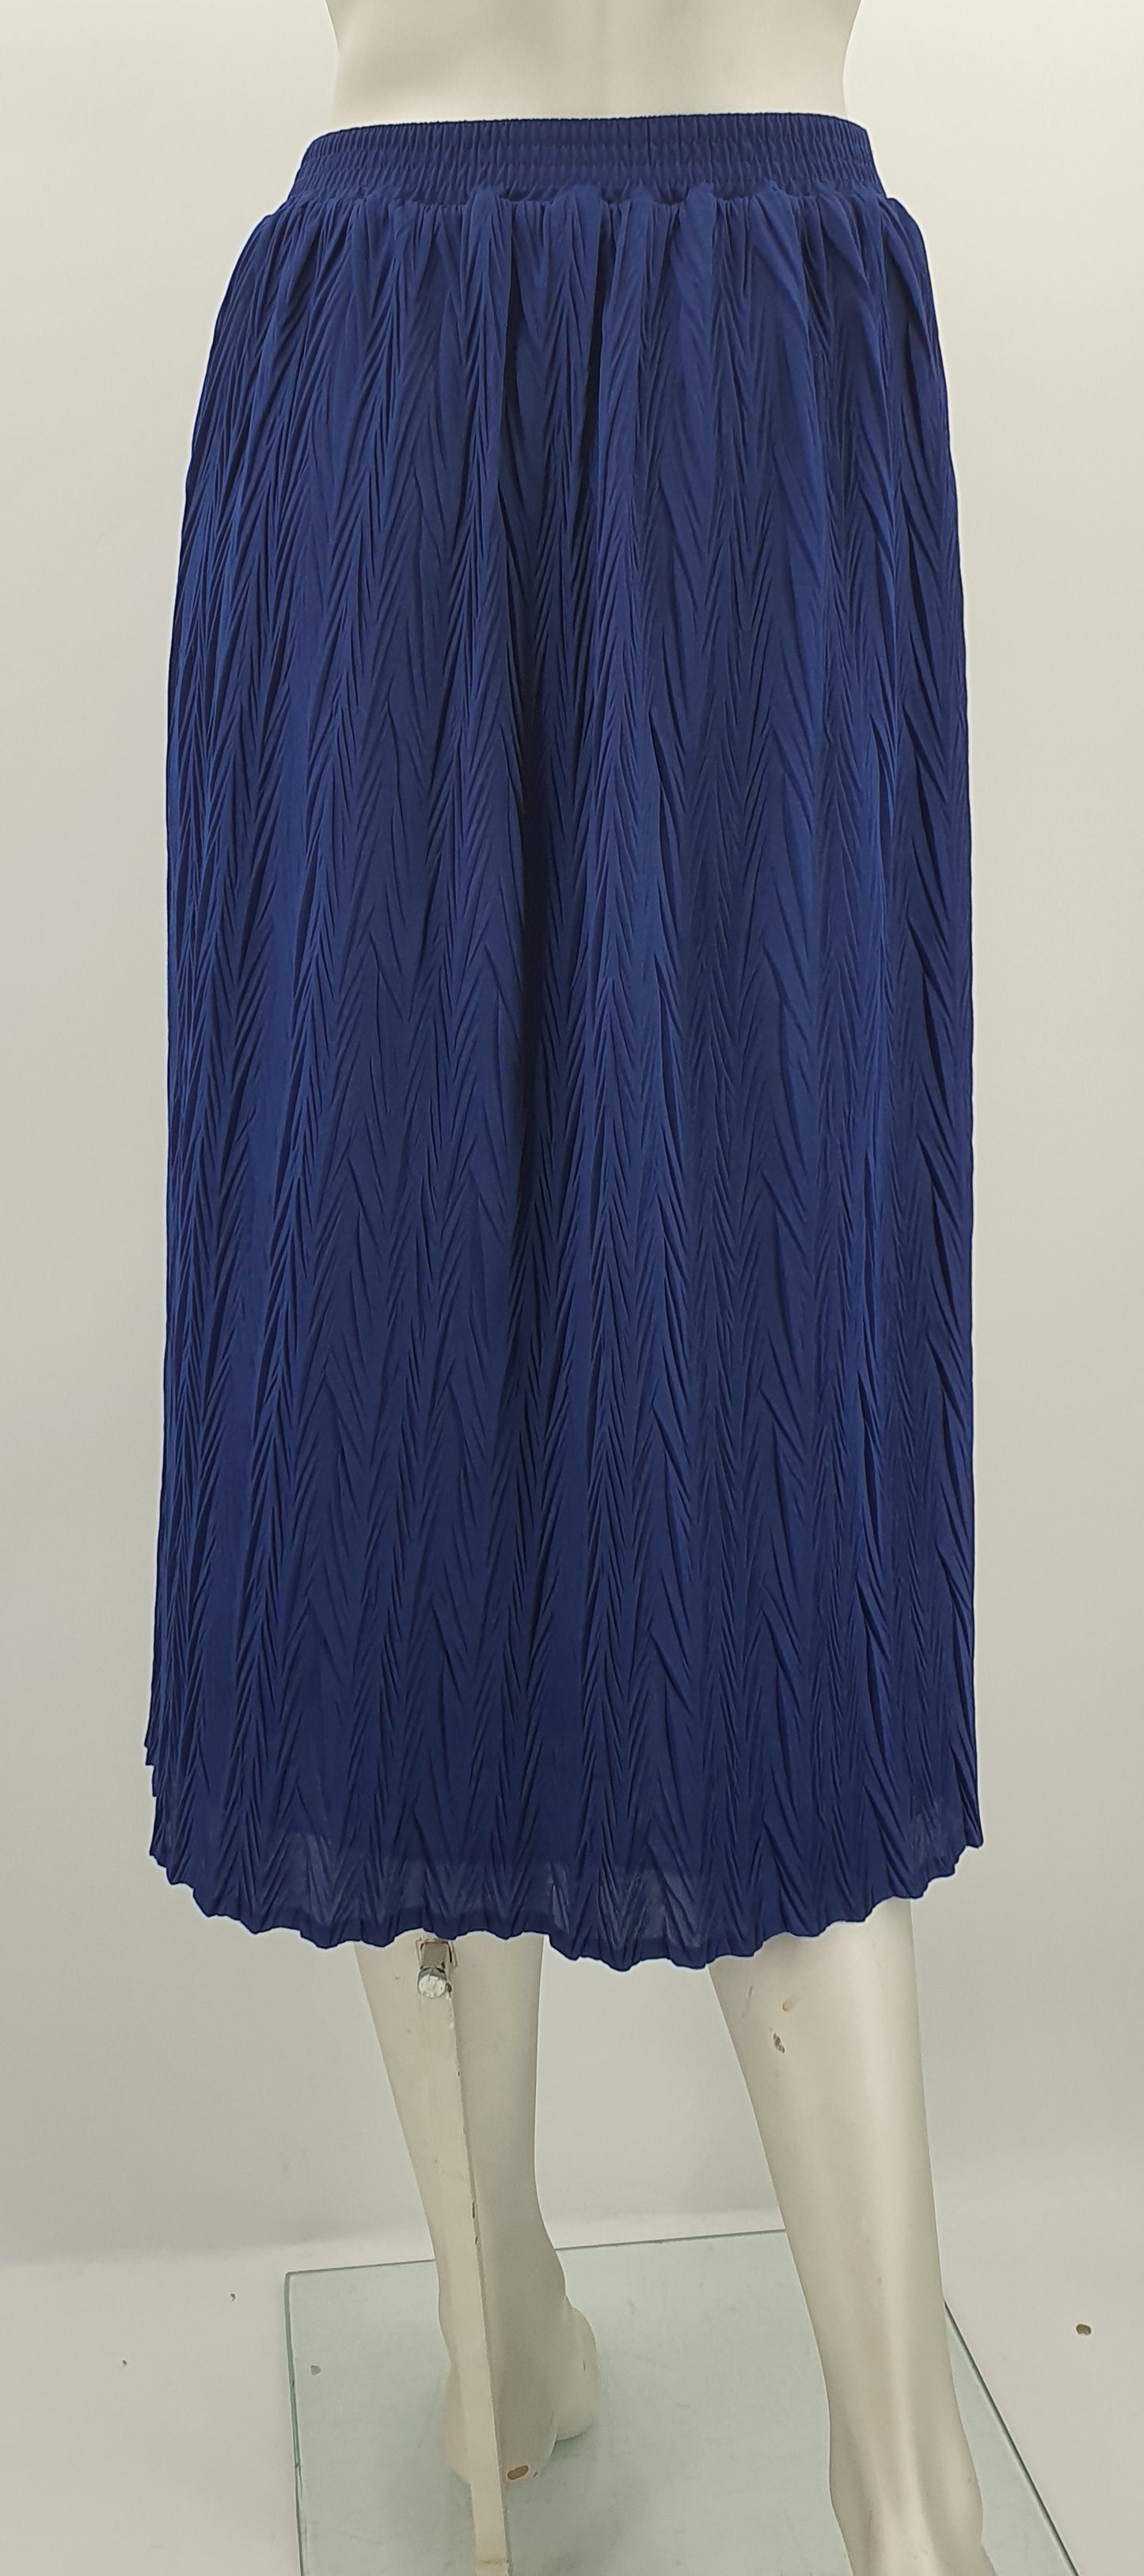 FinnKarelia, tummansininen hame, 80-90-luku, vyöt.ymp. 66-84cm, kokoarvio 40